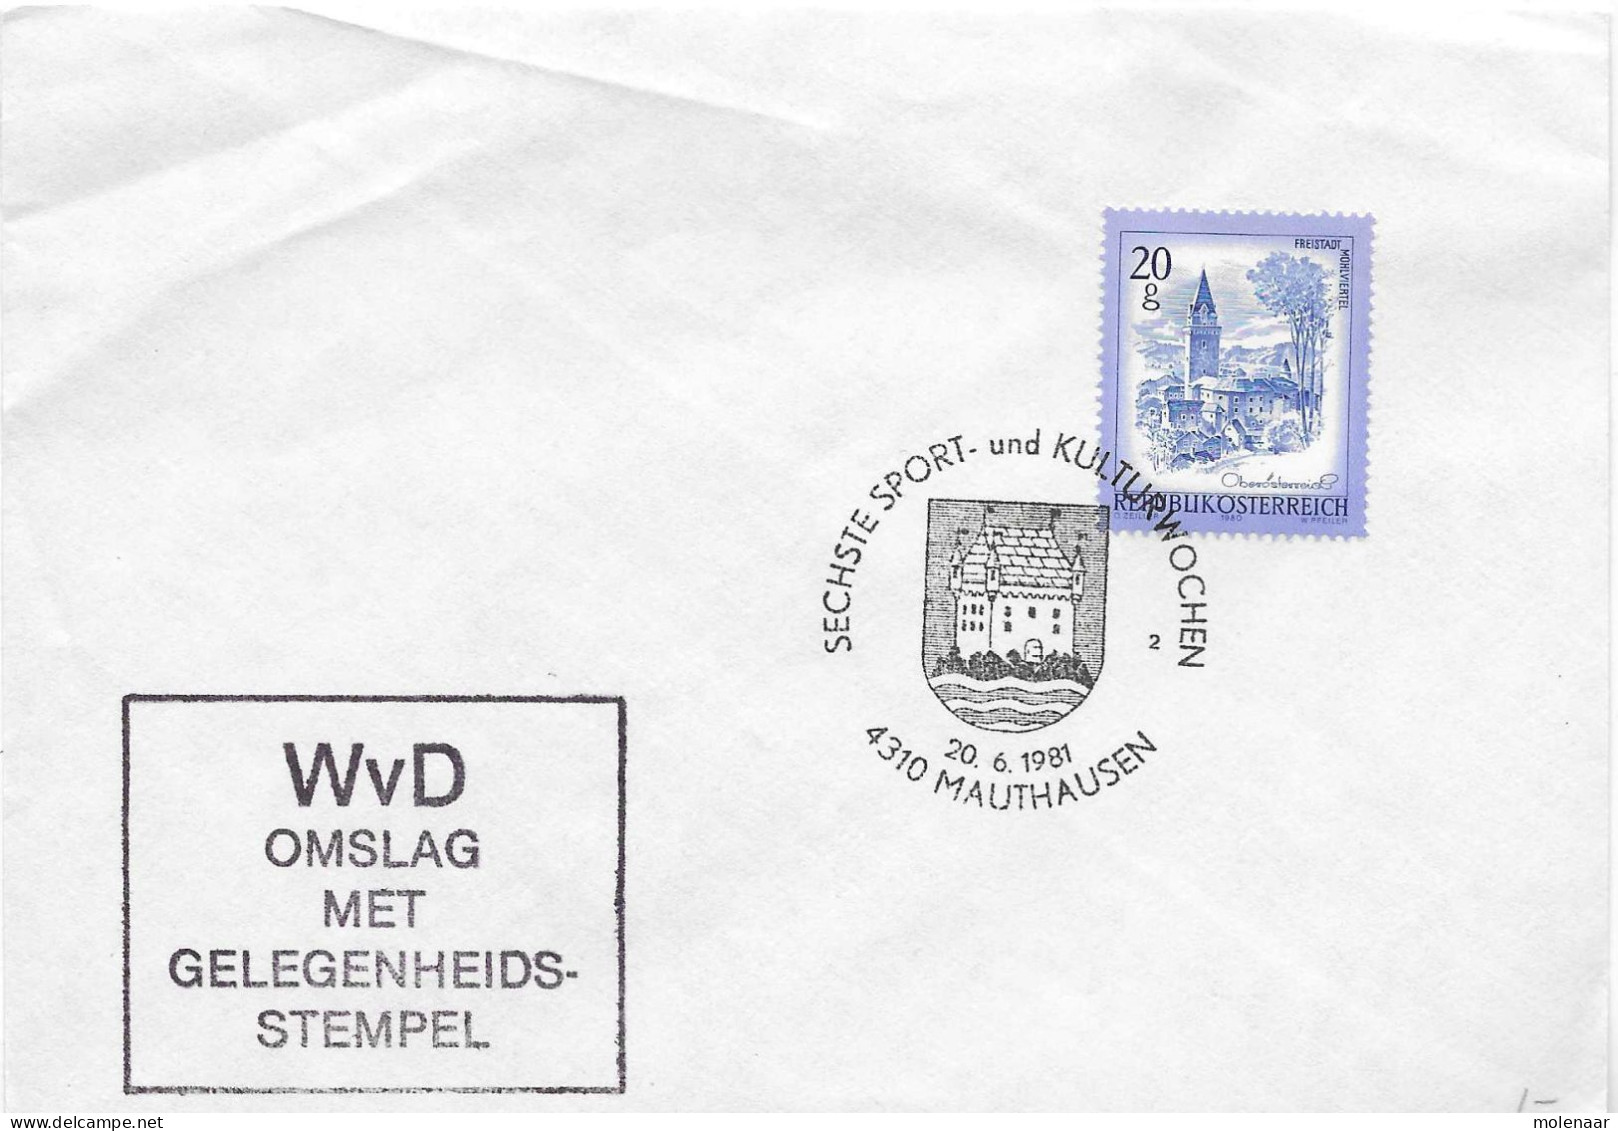 Postzegels > Europa > Oostenrijk > 1945-.... 2de Republiek > 1981-1990 > Brief Met 1 Postzegel (17755) - Covers & Documents